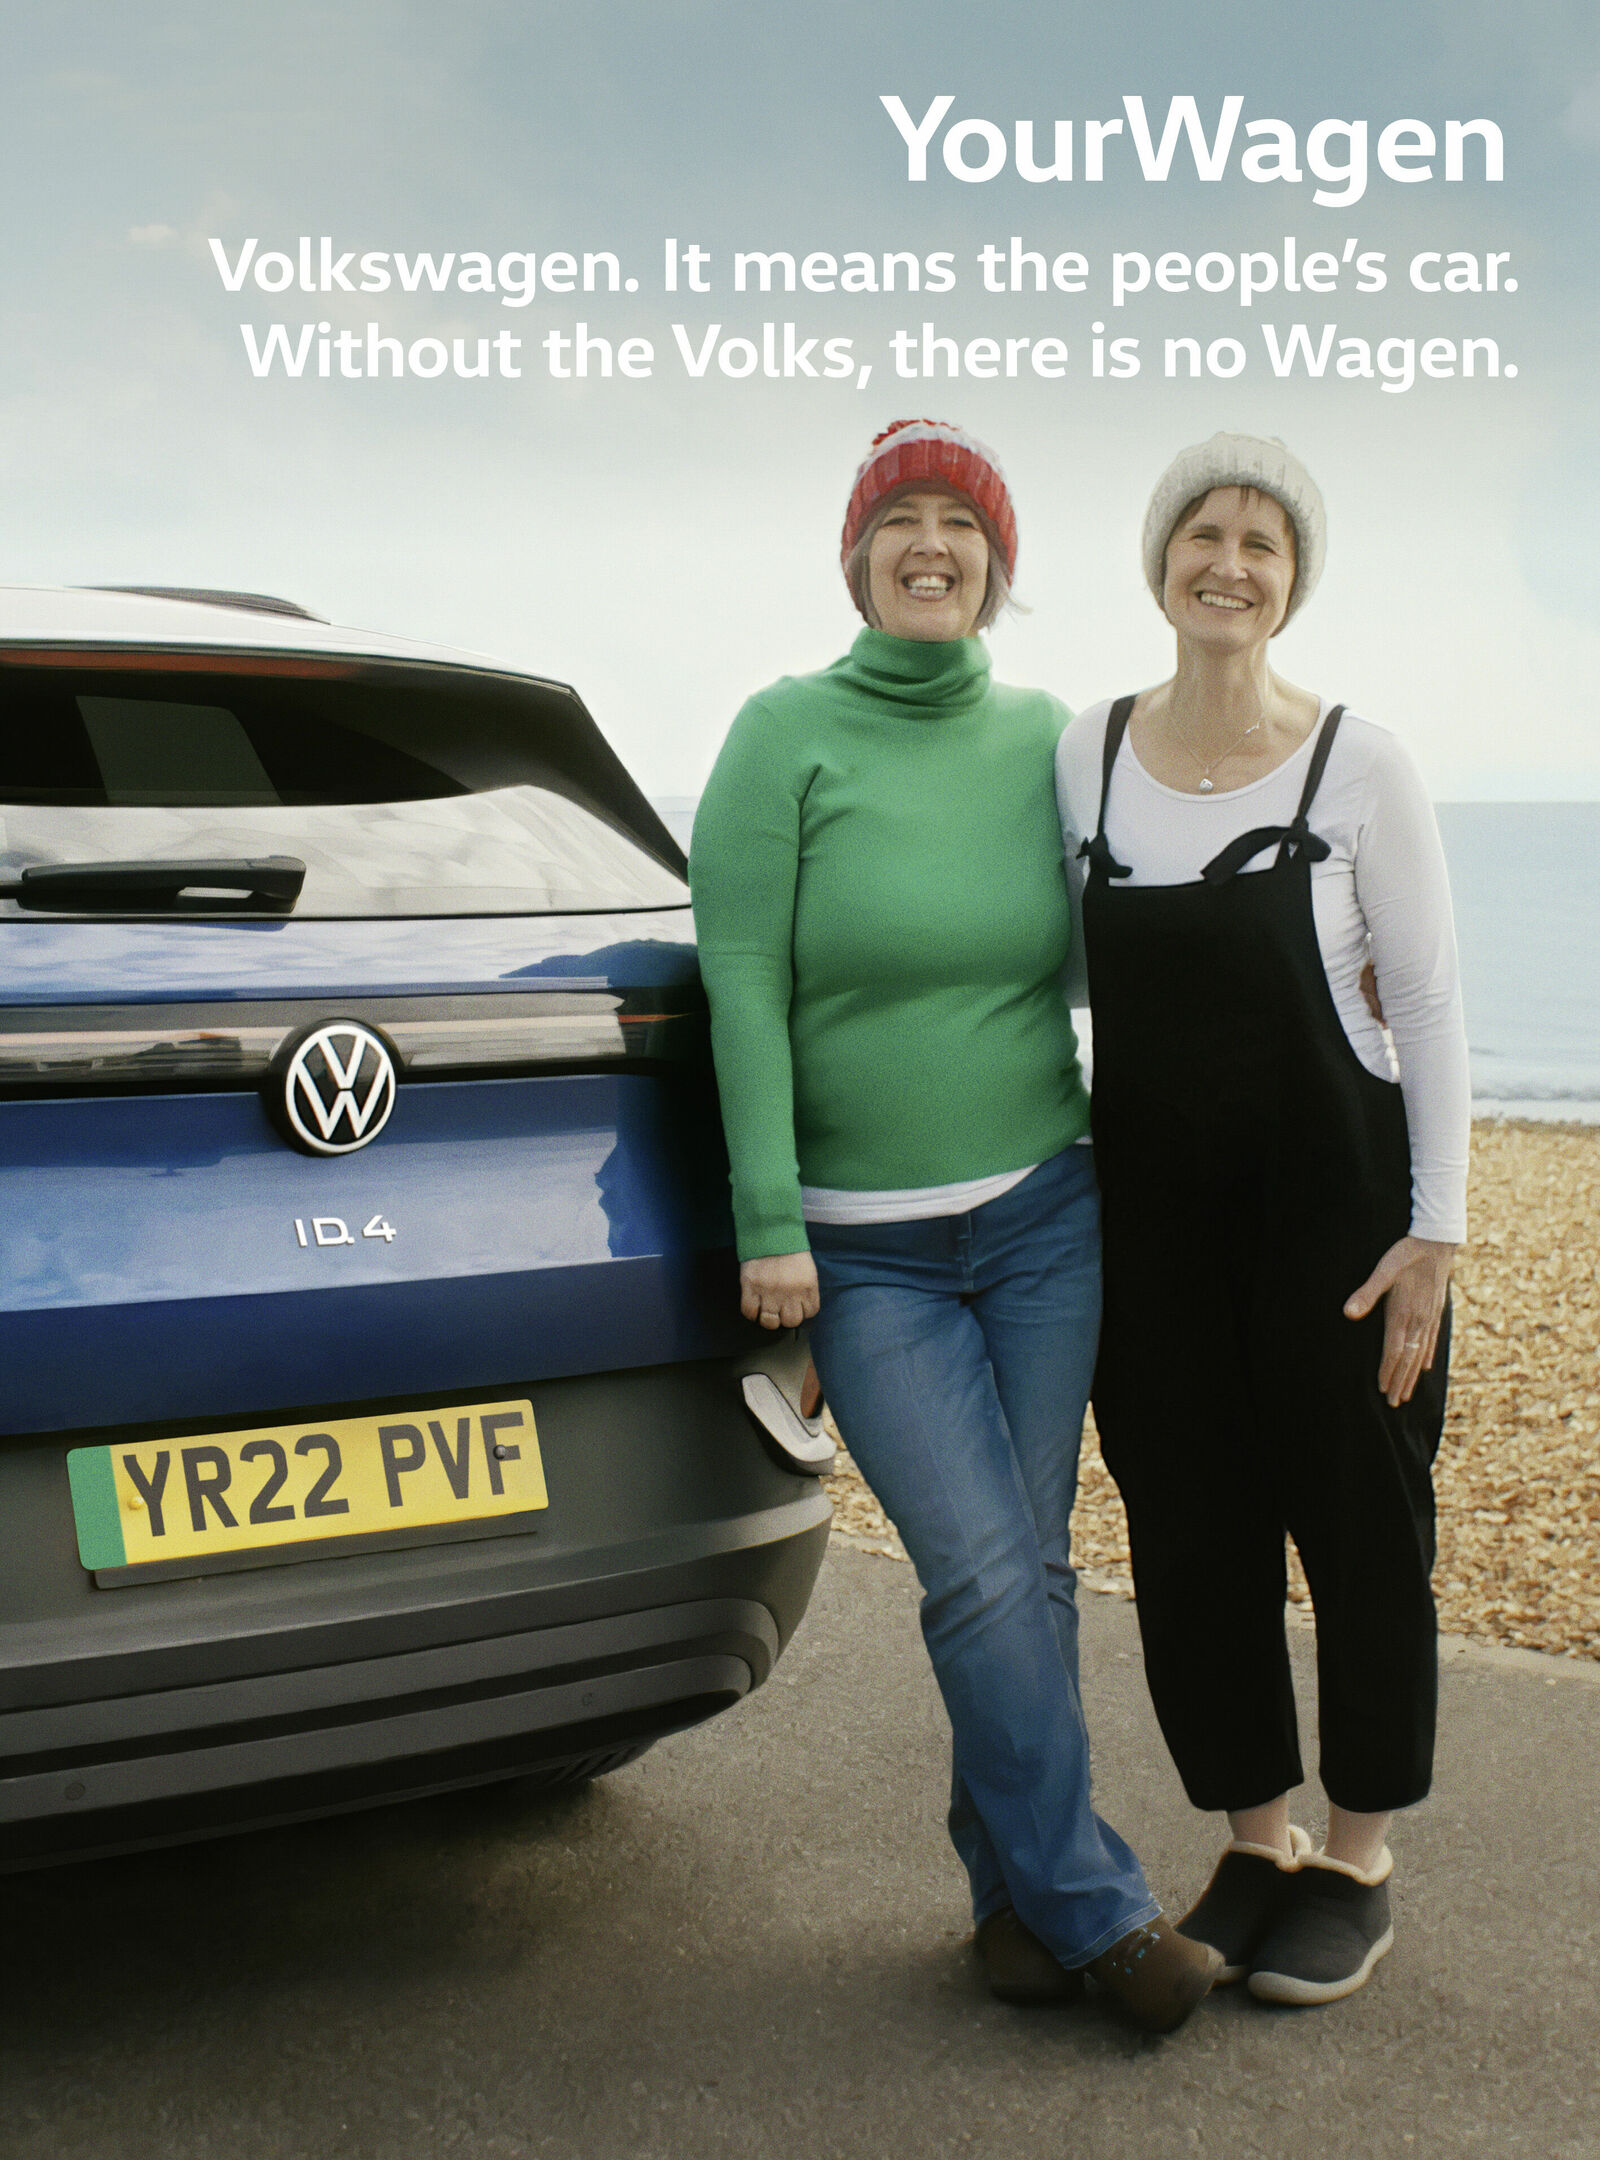 Neue Volkswagen Kampagne erzählt persönliche Geschichten von Kundinnen und Kunden